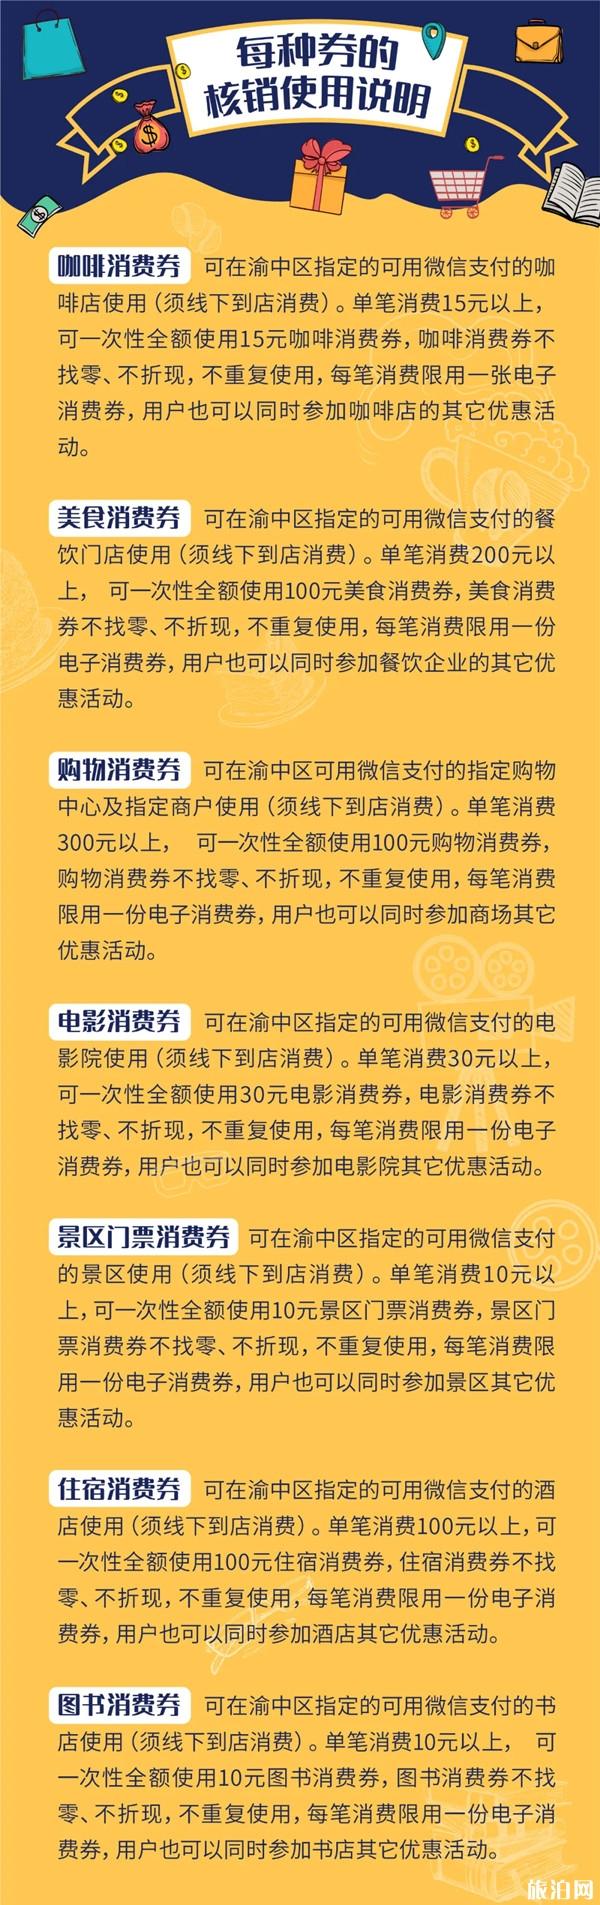 2020重庆渝中区春夏消费季消费券预约流程及发放方式-使用方式